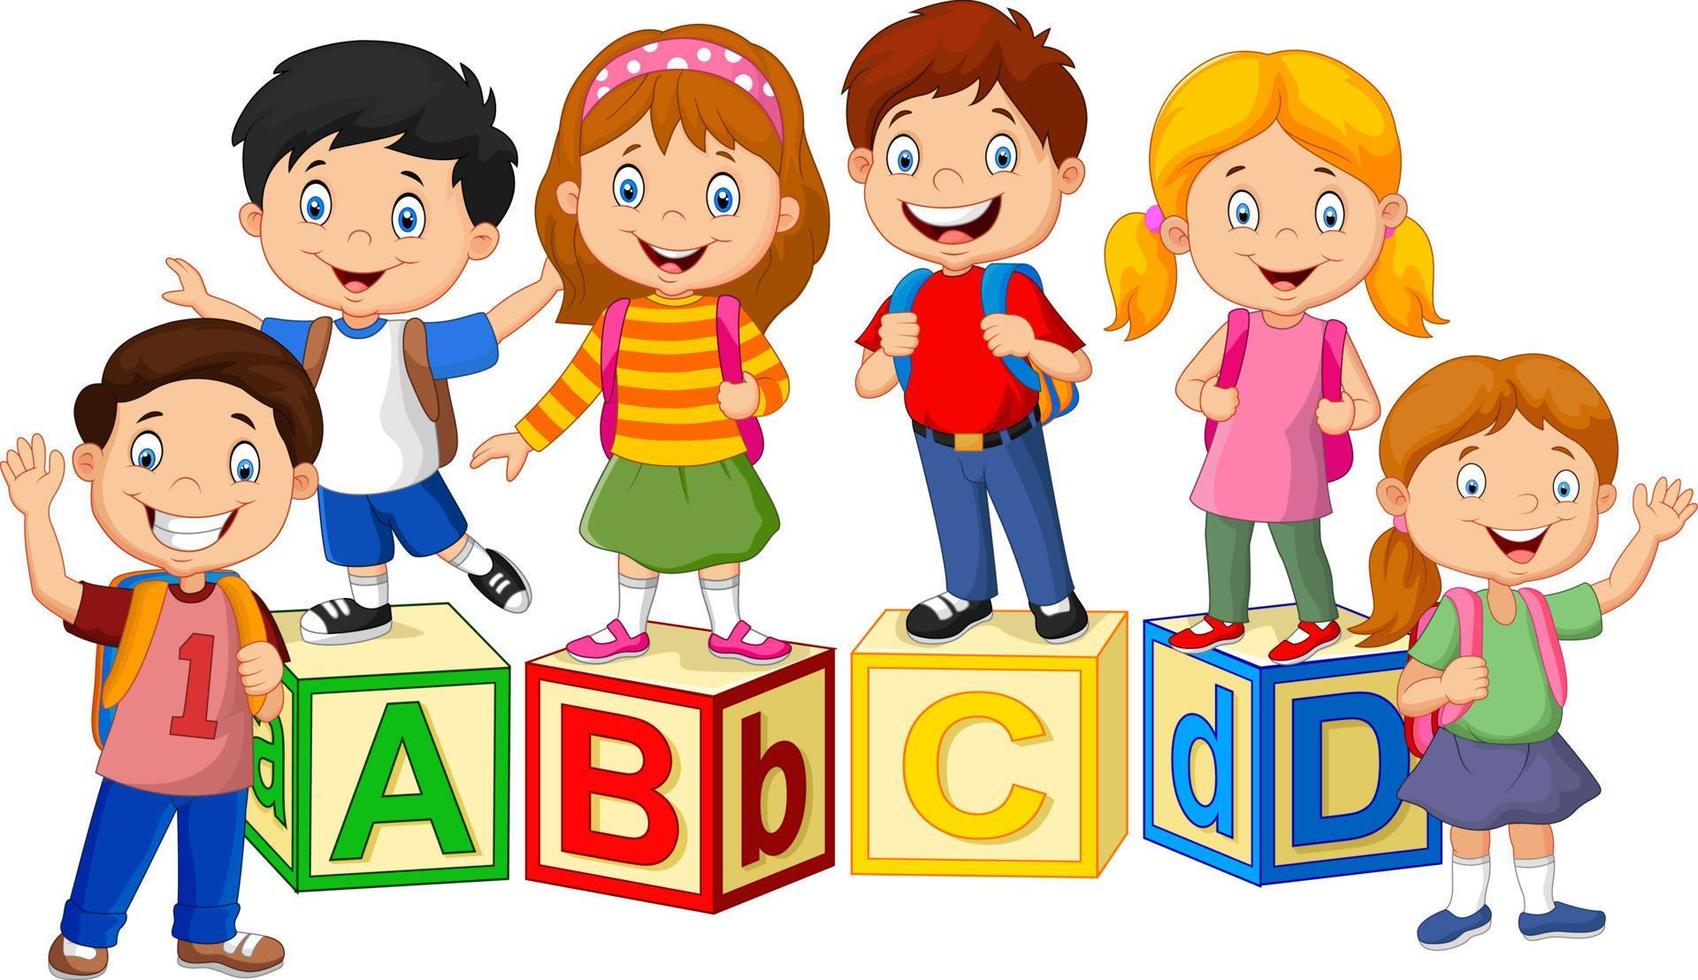 glada skolbarn med alfabetsblock vektor